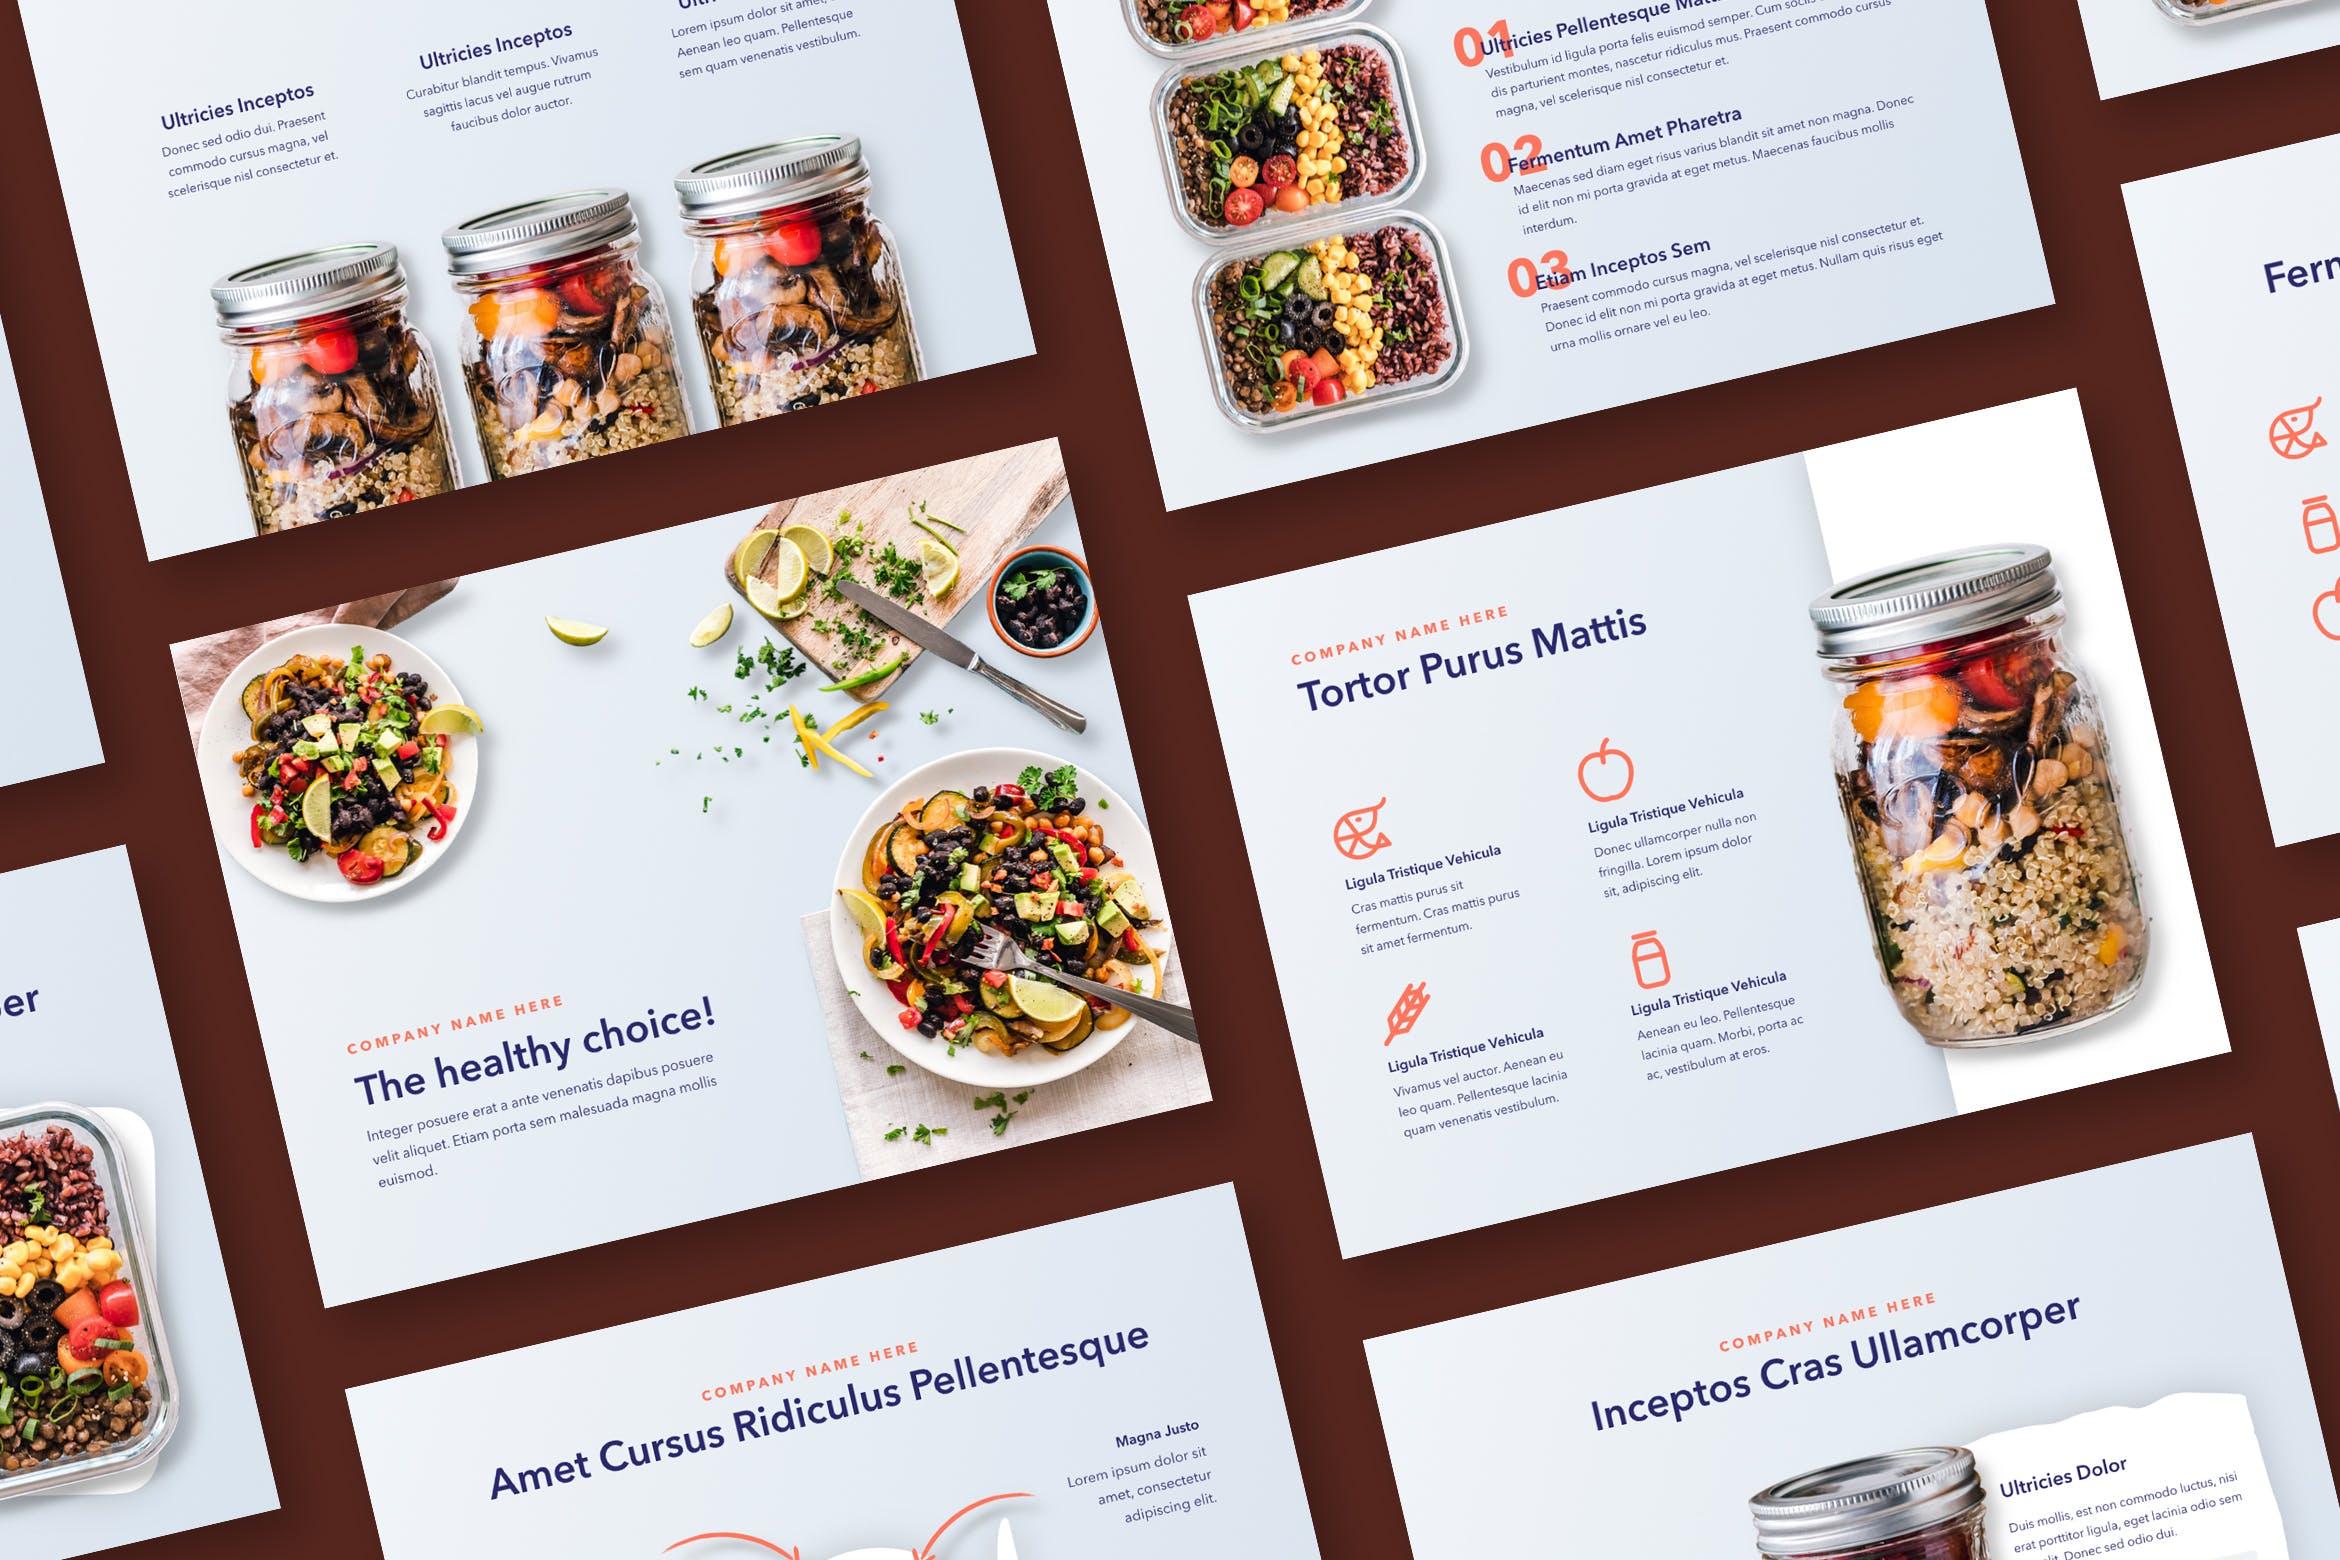 营养配餐食谱谷歌幻灯片设计模板 Nutritious Google Slides Template插图